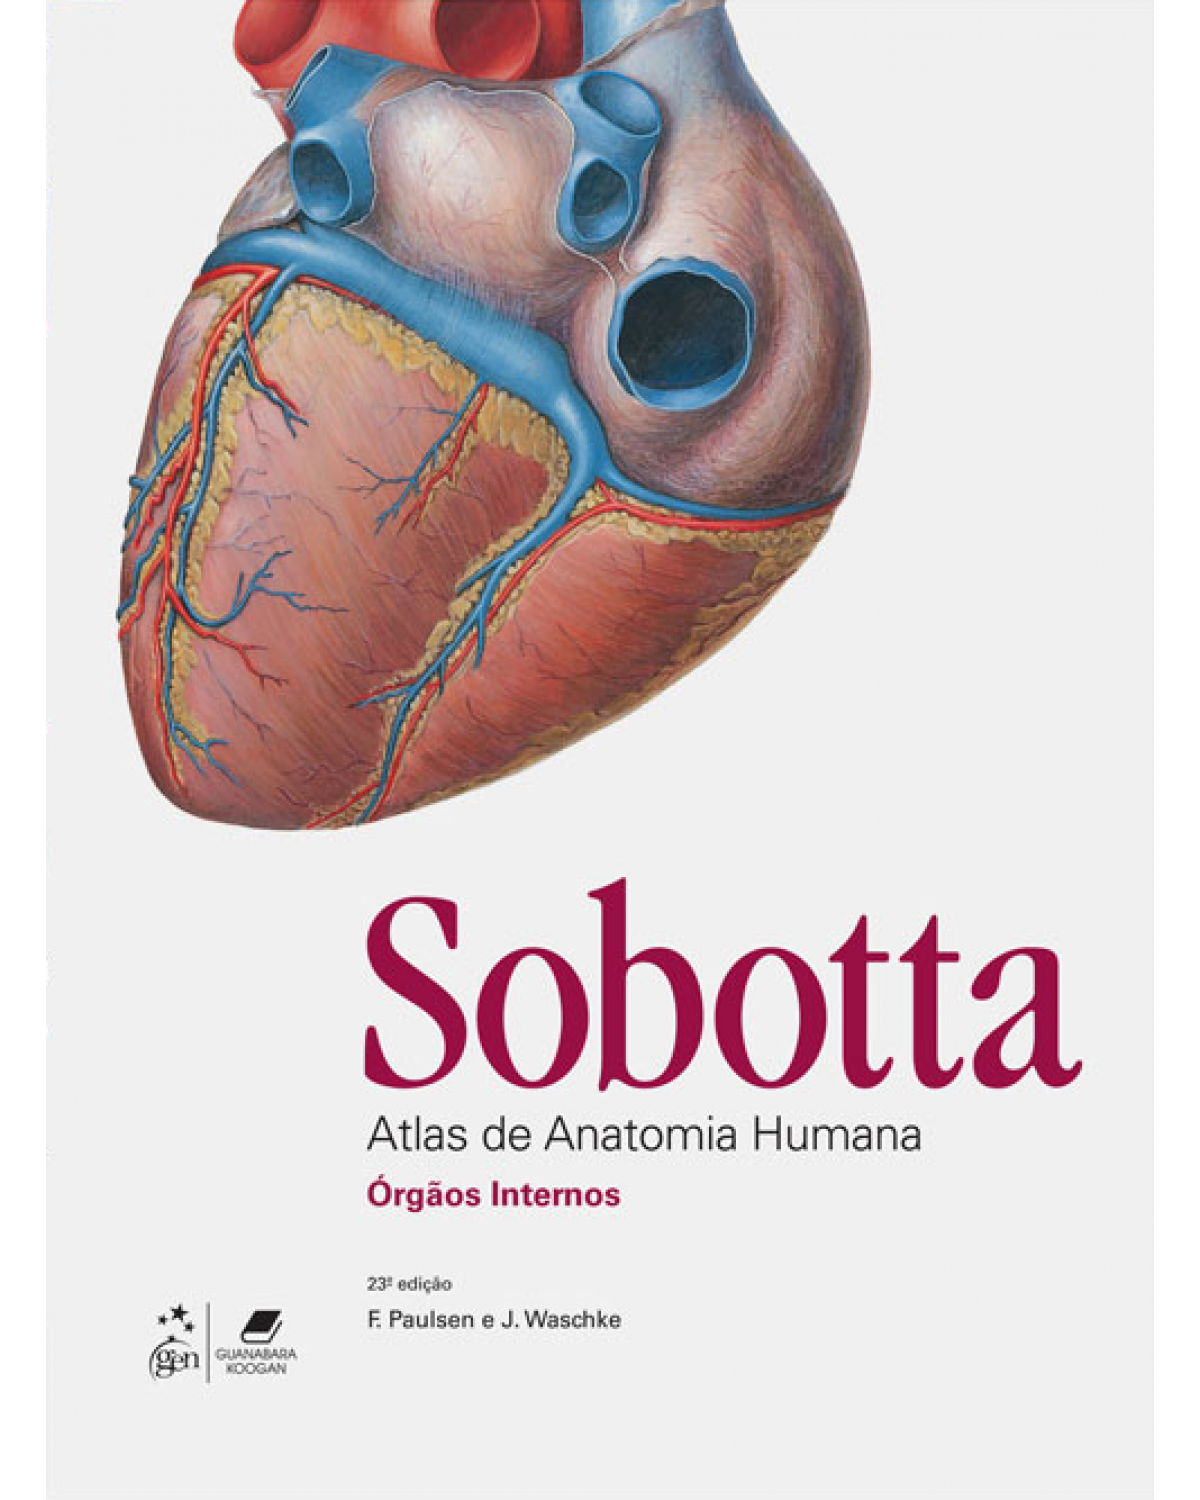 Sobotta - Atlas de anatomia humana - Anatomia geral e sistema muscular, Órgãos internos, Cabeça, pescoço e neuroanatomia - 23ª Edição | 2013